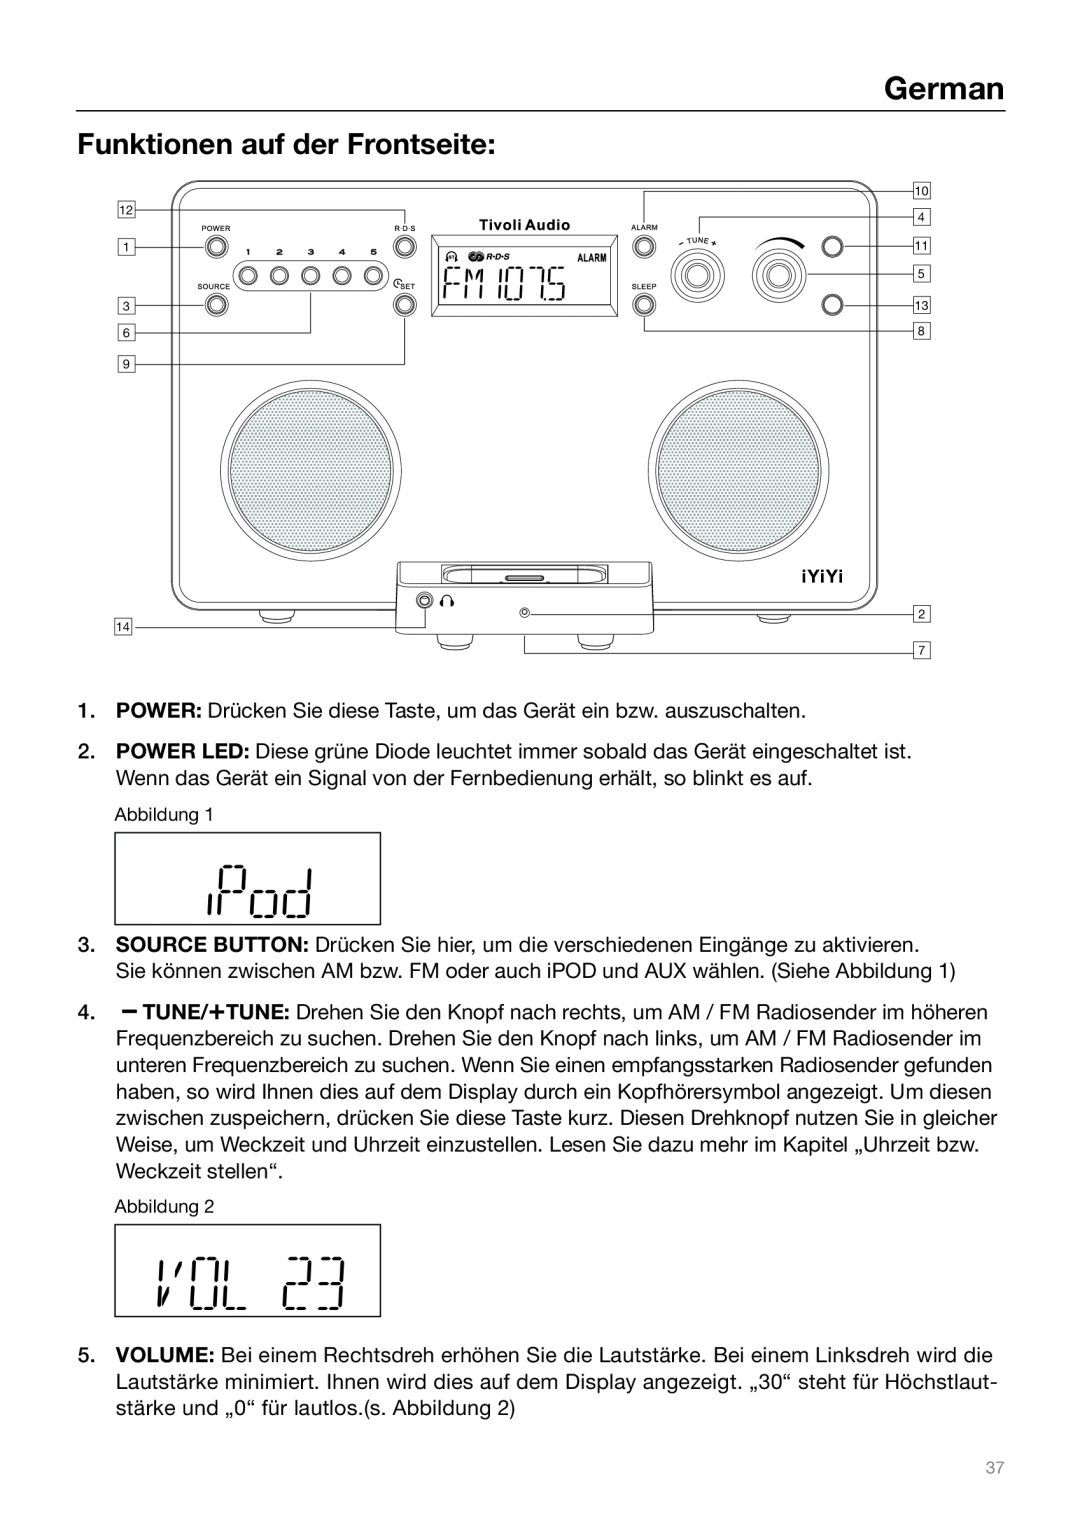 Tivoli Audio Sound System owner manual Funktionen auf der Frontseite, German 